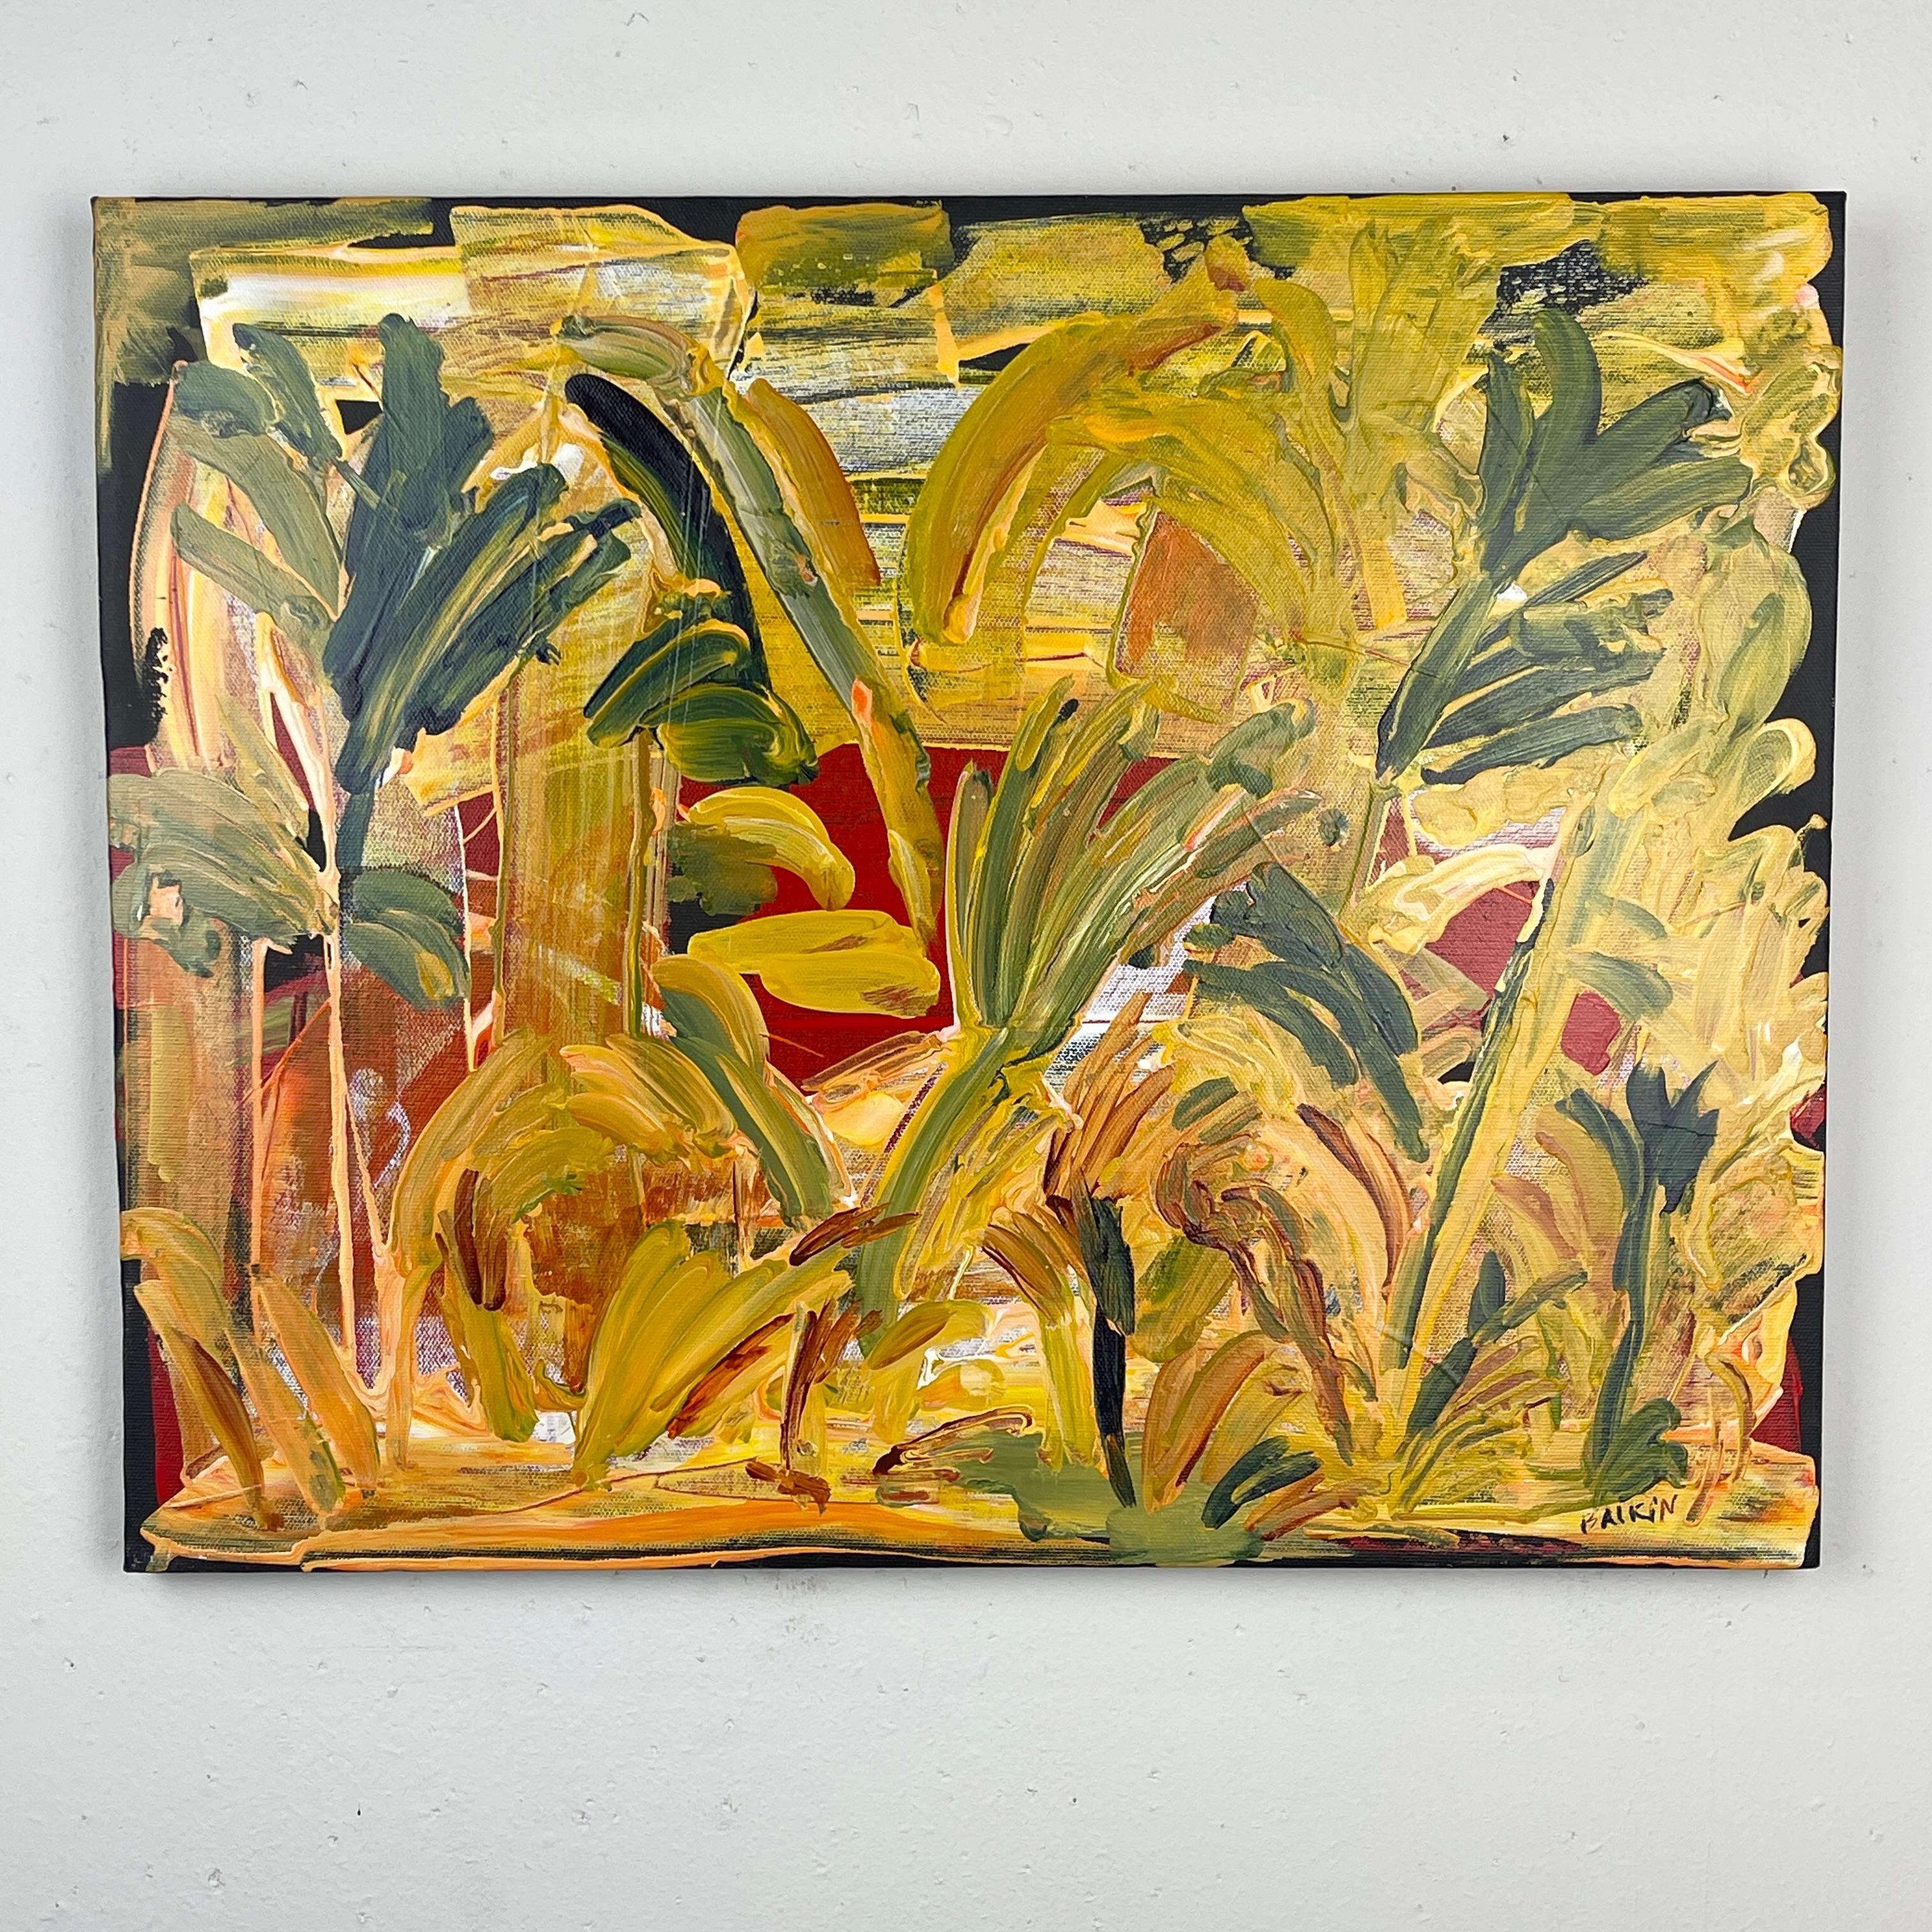 Steve Balkin (1938-2023)
Cette peinture a été achetée à la succession de Balkin. Elle provient de son domicile au nord de l'État de New York. Elle est intitulée "Venus de Floride", datée de 8/2007 et signée au recto et au verso. Cette peinture